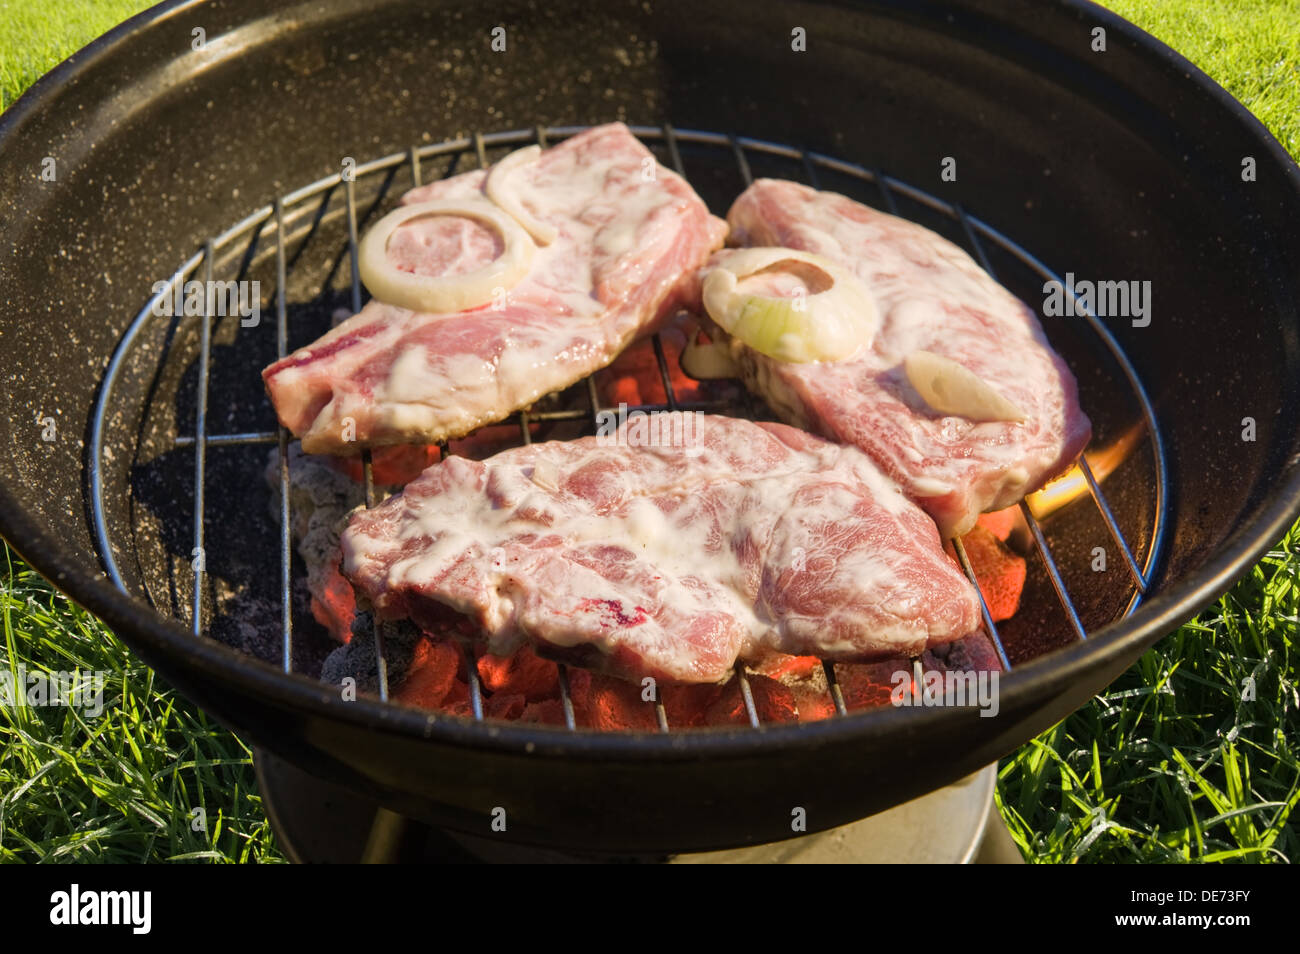 Bollitore barbecue grill con la carne cruda su sfondo di erba Foto Stock